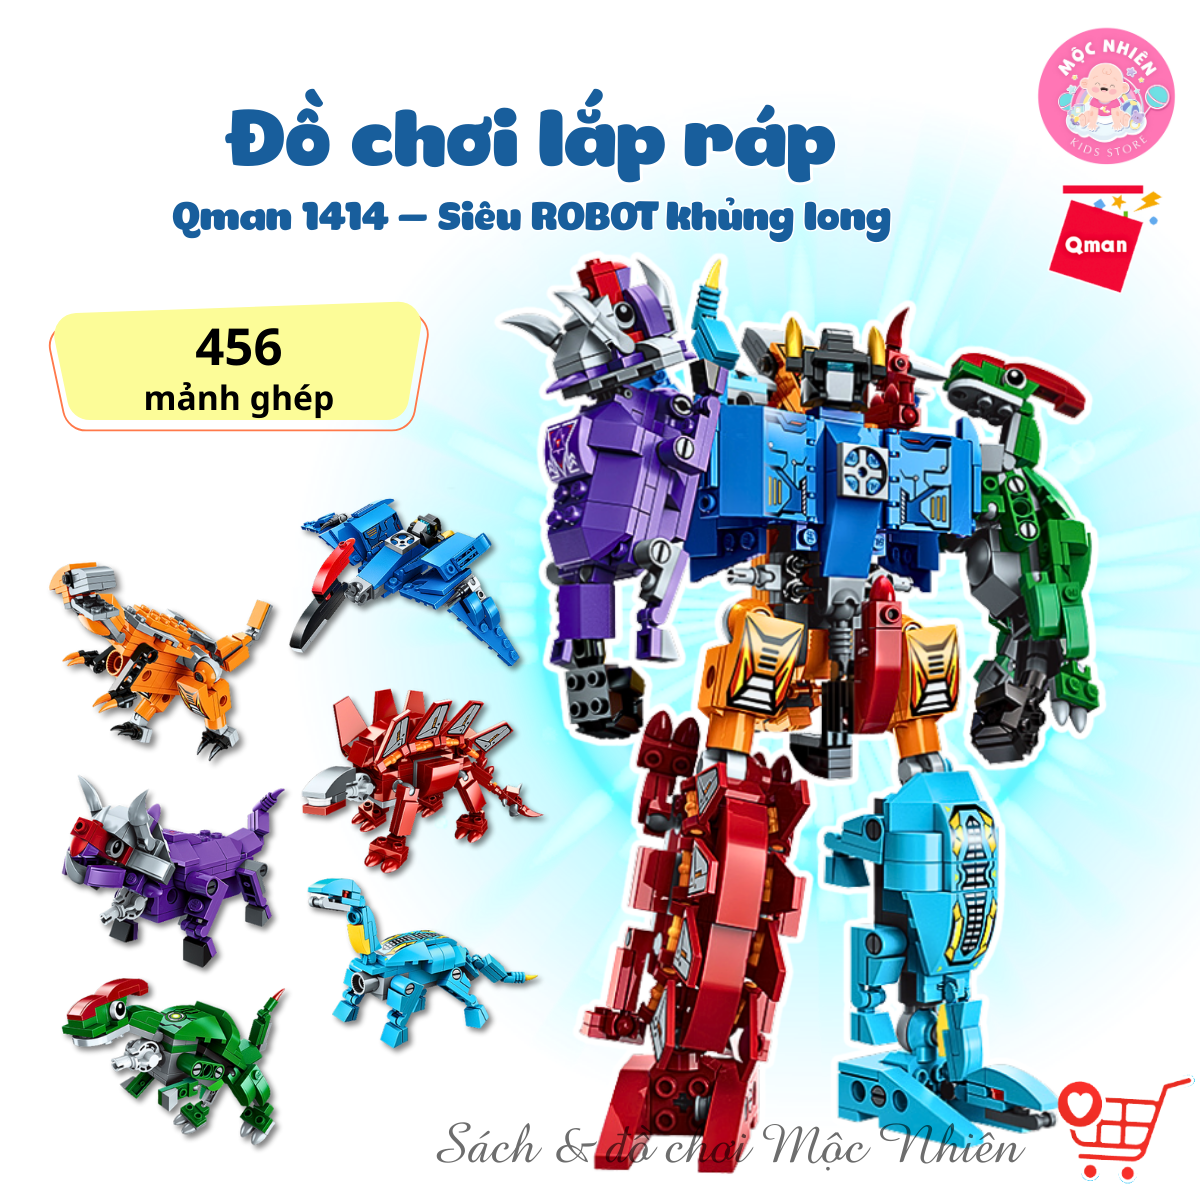 Đồ chơi lắp ráp xếp hình robot người máy Qman 1414 - Siêu Robot khủng long (456 mảnh ghép) dành cho bé trên 6 tuổi